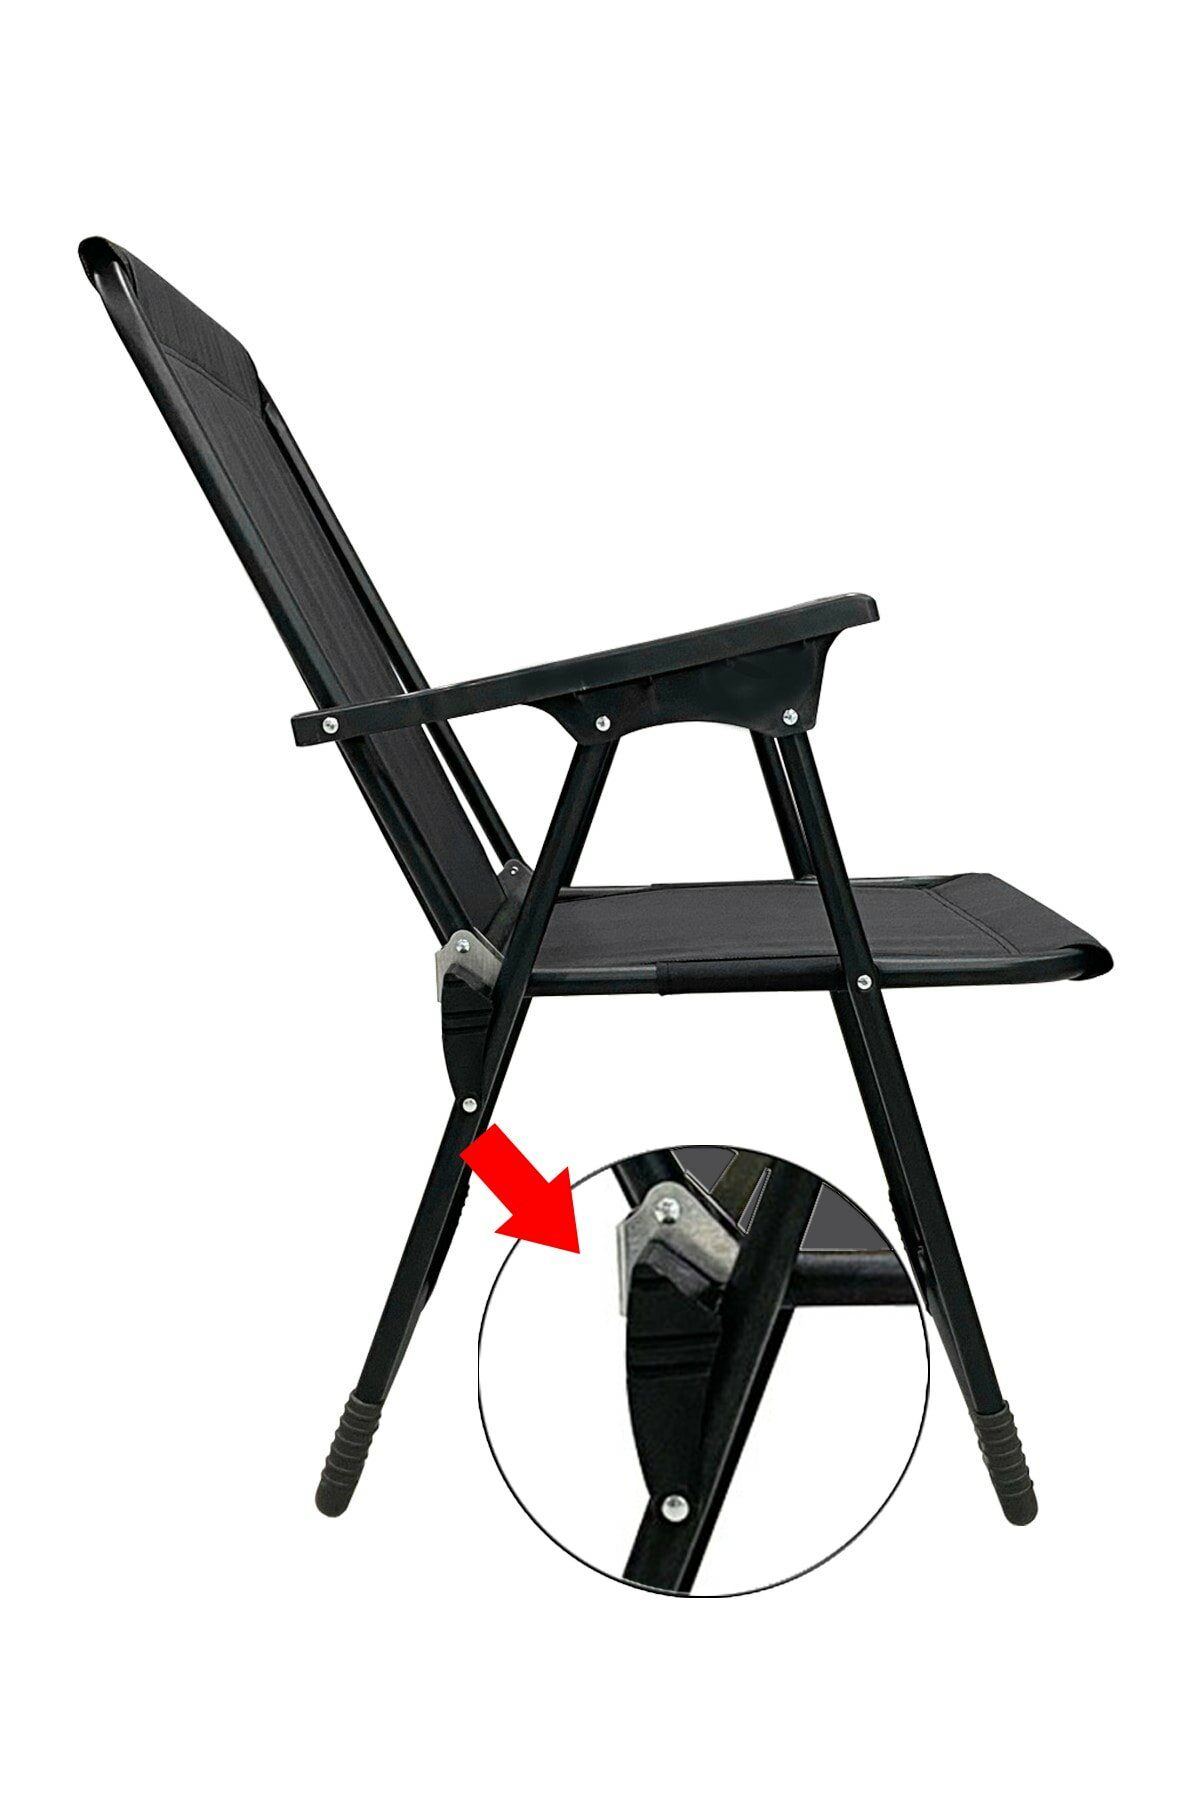 4 Adet Katlanır Kamp Sandalyesi Piknik Koltuğu Plaj Şezlongu Oval Bardaklıklı Siyah + MDF Masa